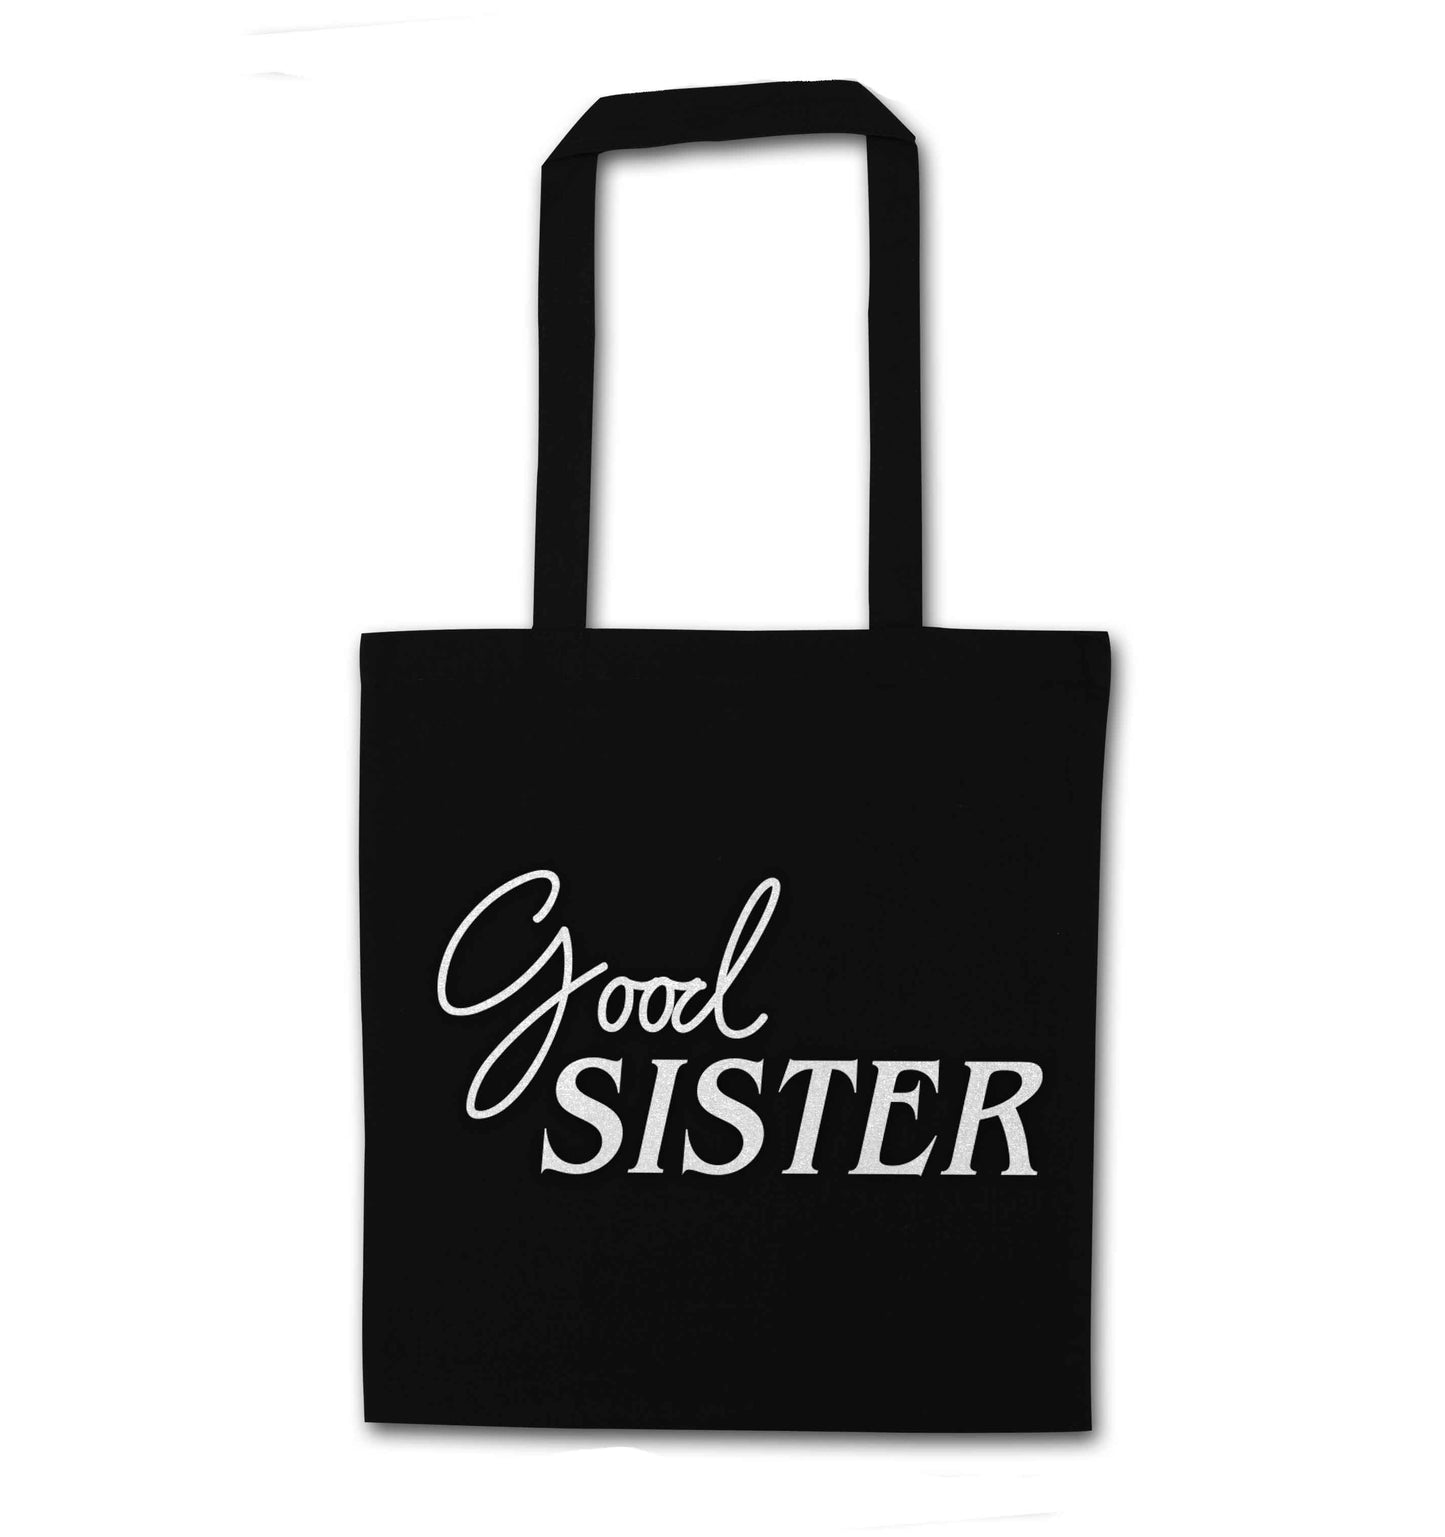 Good sister black tote bag